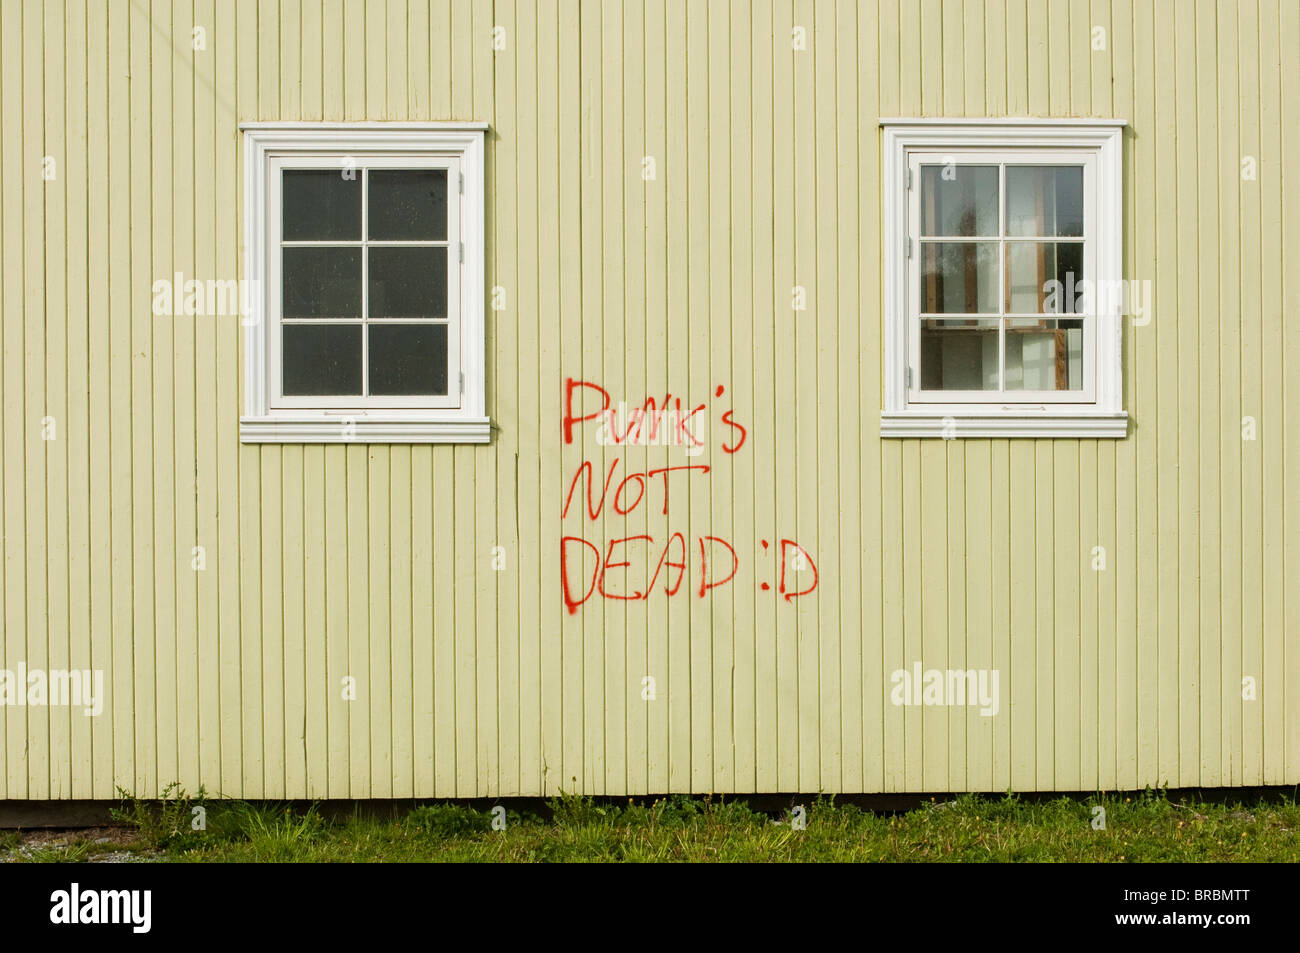 El punk no está muerto. Grafito en una pared. Foto de stock